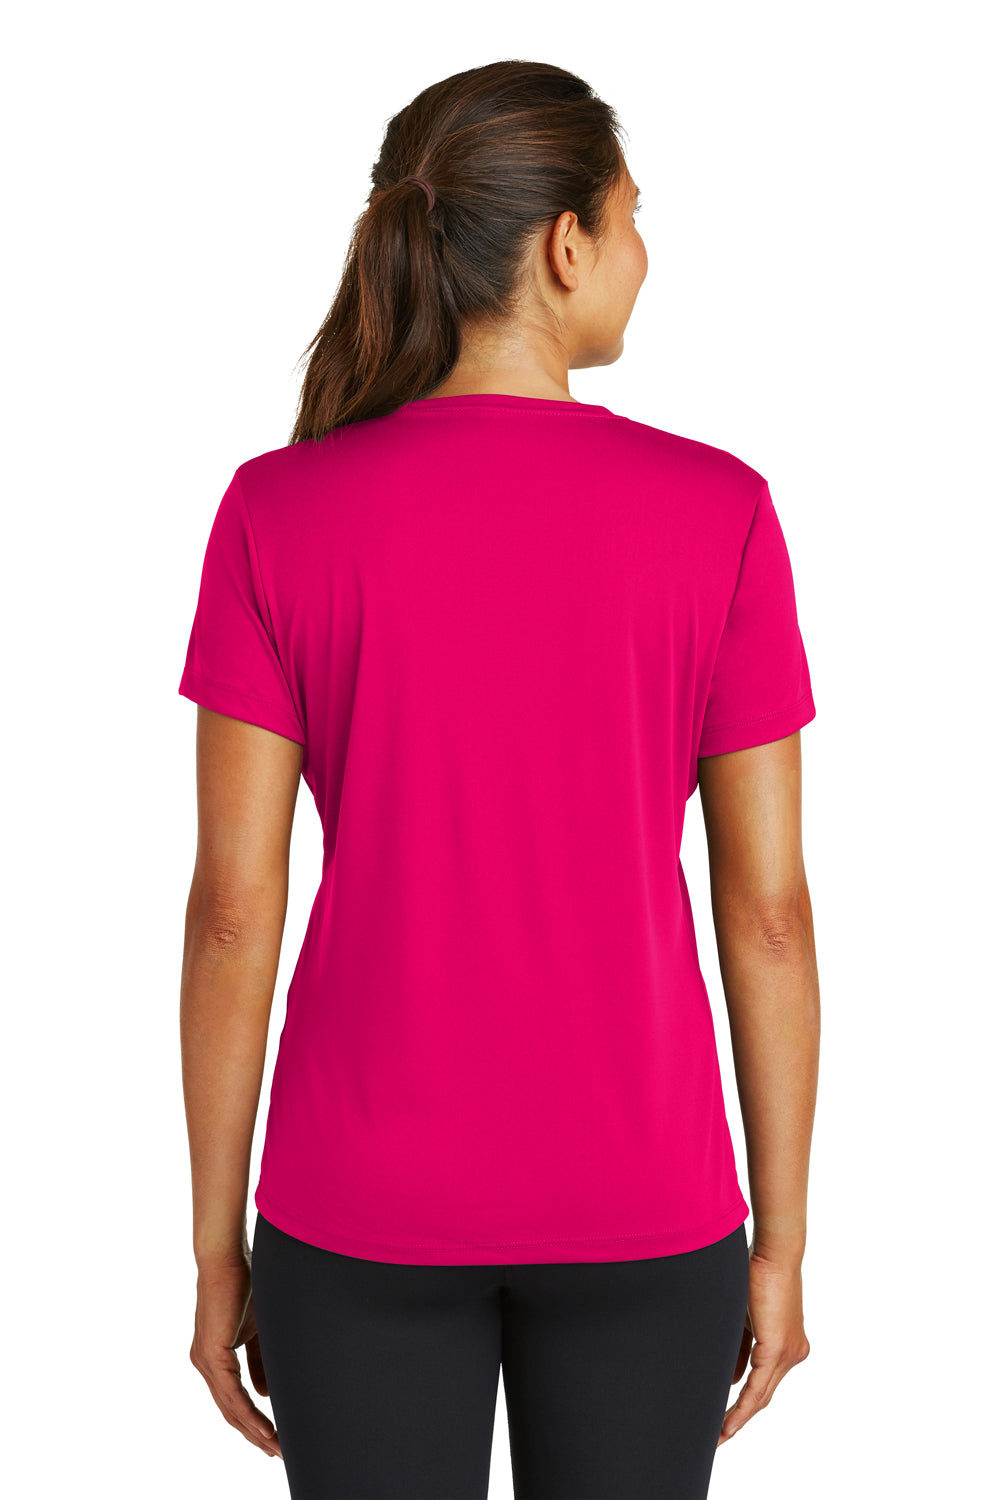 Sport-Tek LST350 Womens Competitor Moisture Wicking Short Sleeve Crewneck T-Shirt Fuchsia Pink Back